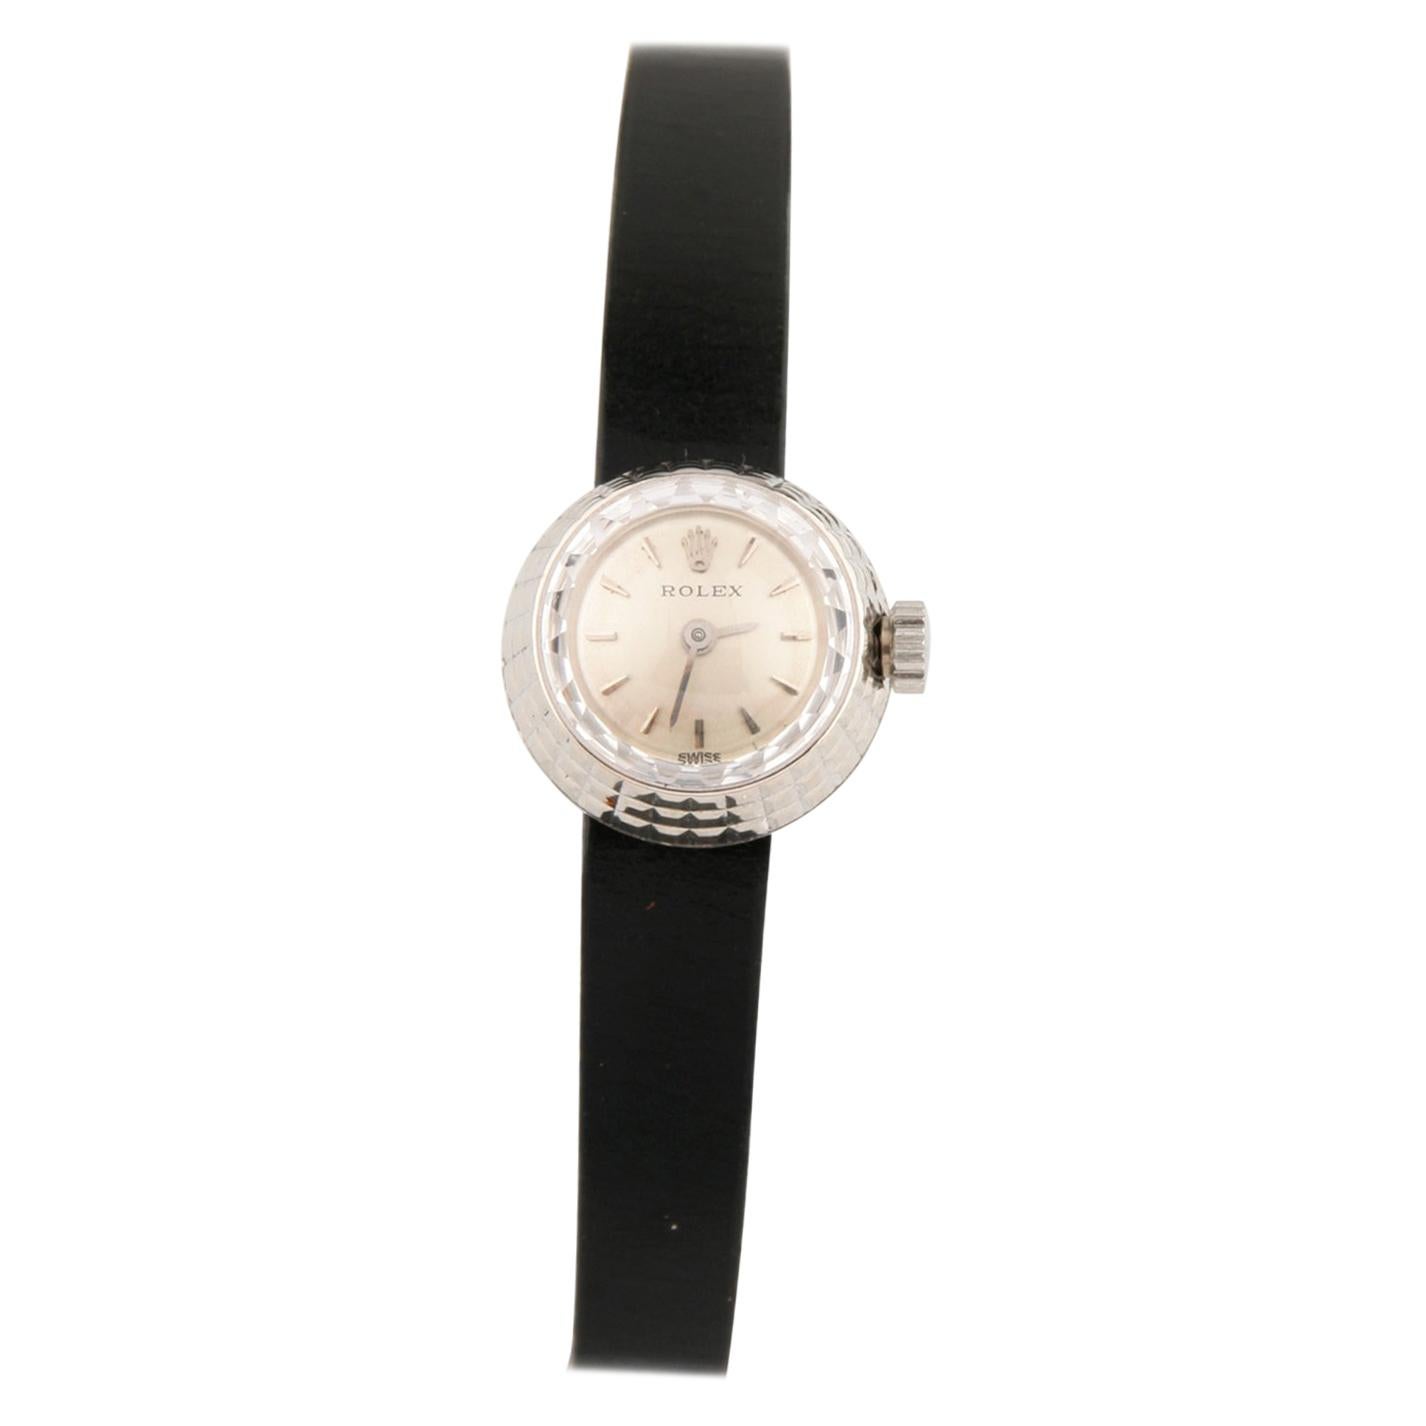 Rolex Damen Modelle Depose #1401 18 Karat Uhr Cameleon Lederband, 1950er Jahre